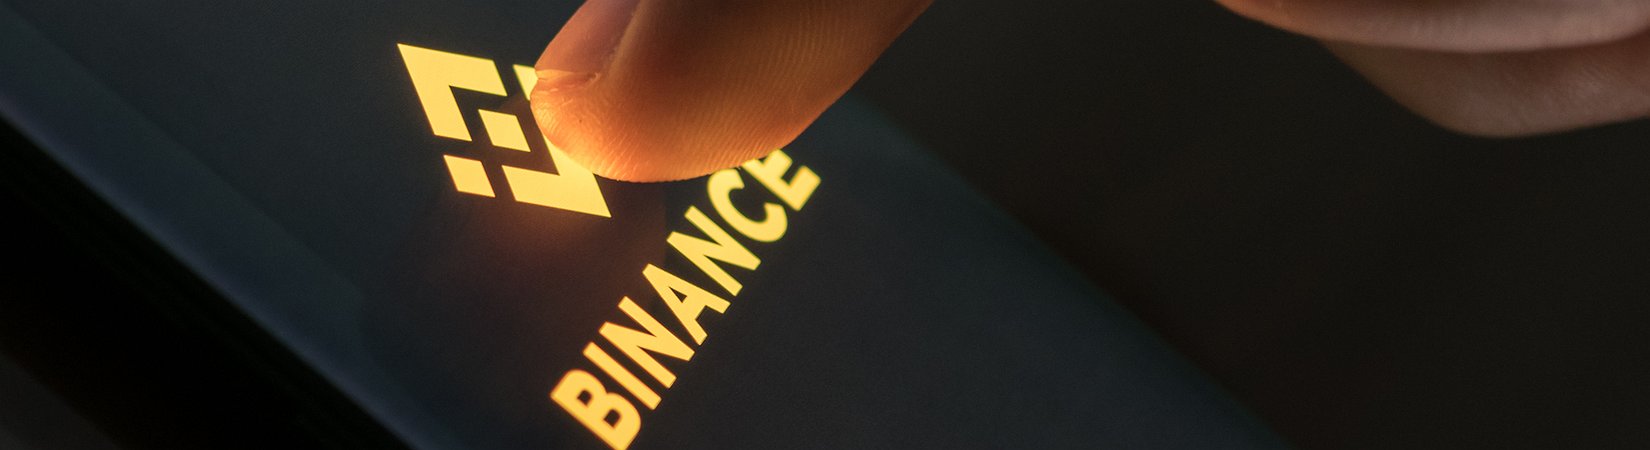 Binance расширила список активов для маржинальной торговли ...
